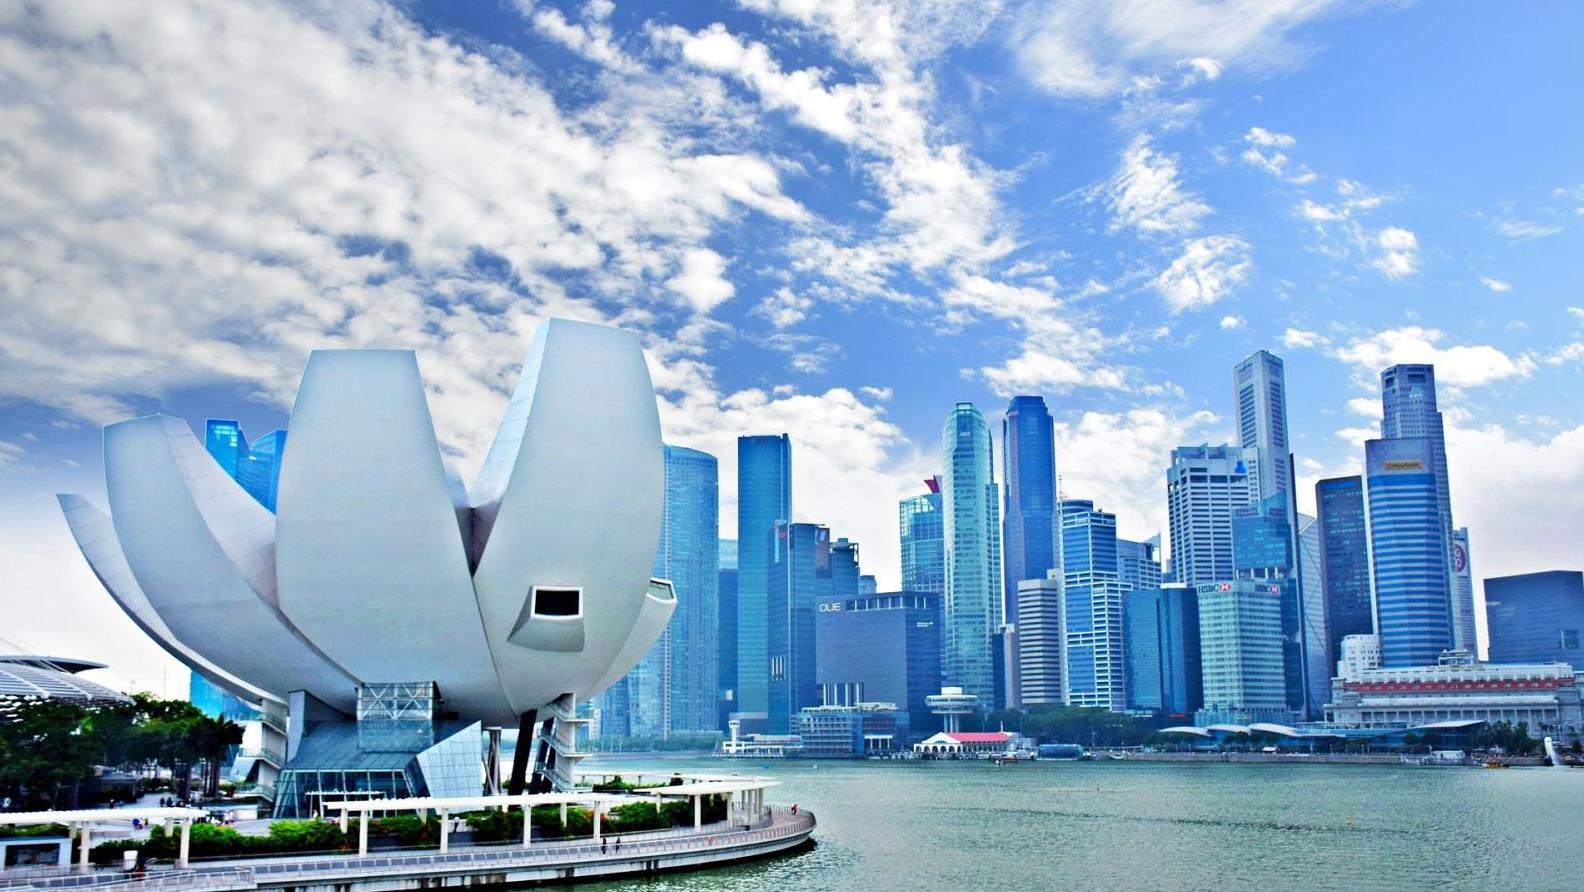   L’Observatoire : Singapour se renforce avec Art SG